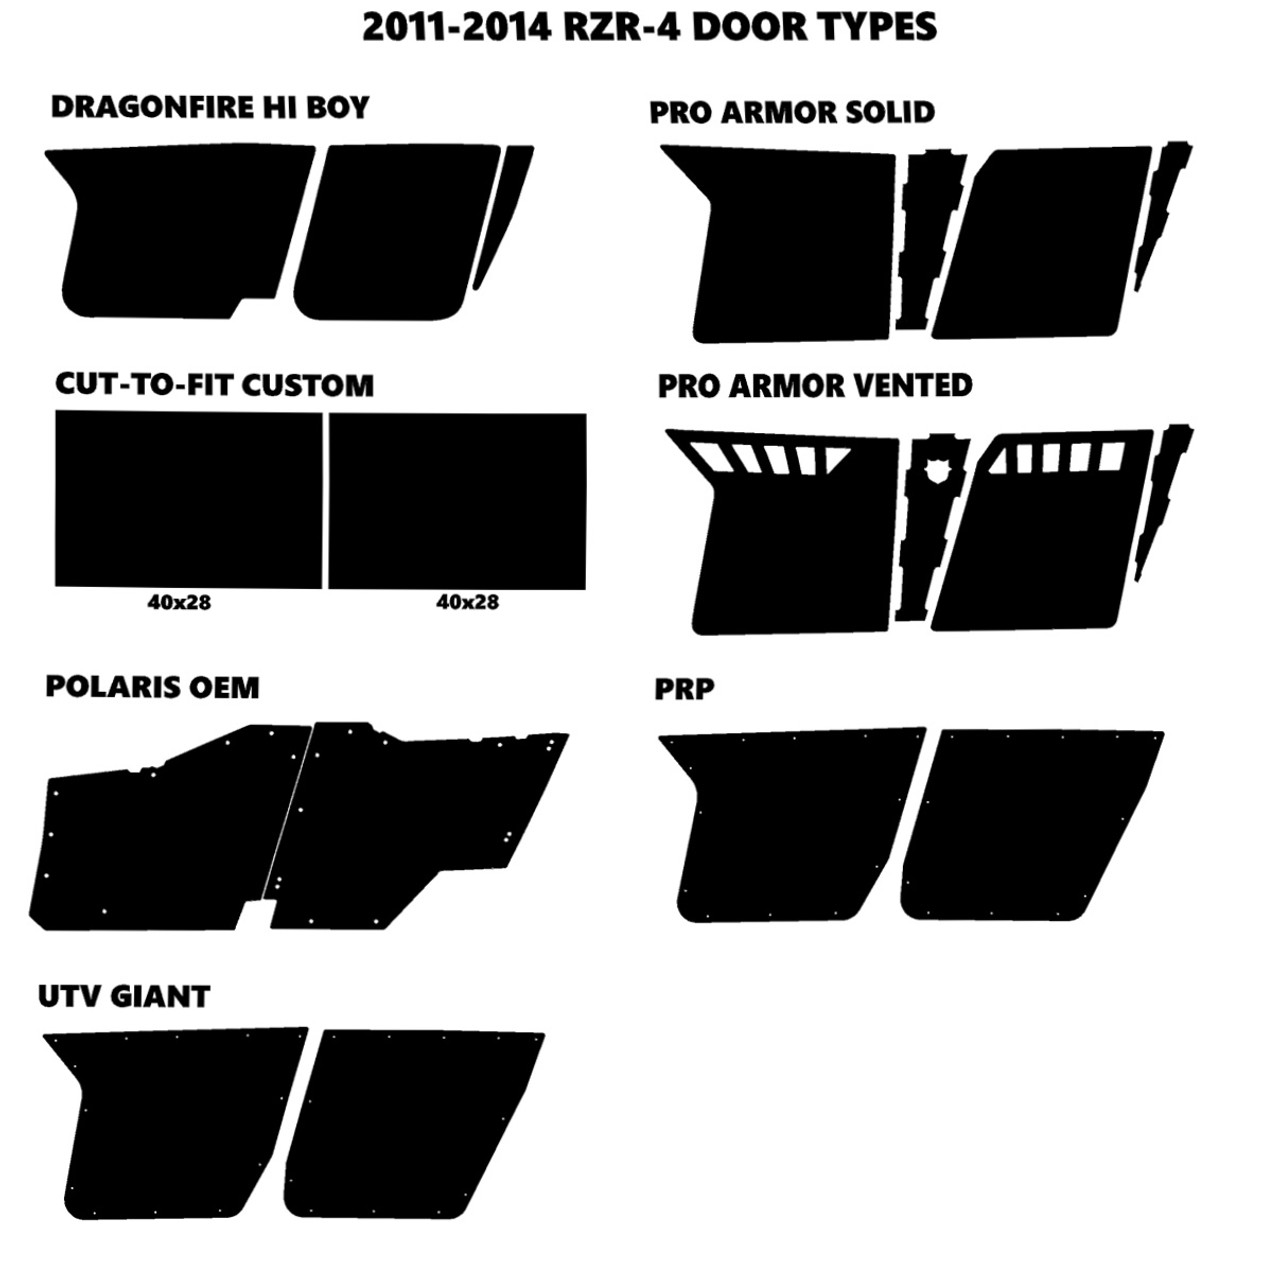 RZR4-800 4-SEATER 2011-2014 Design 2500